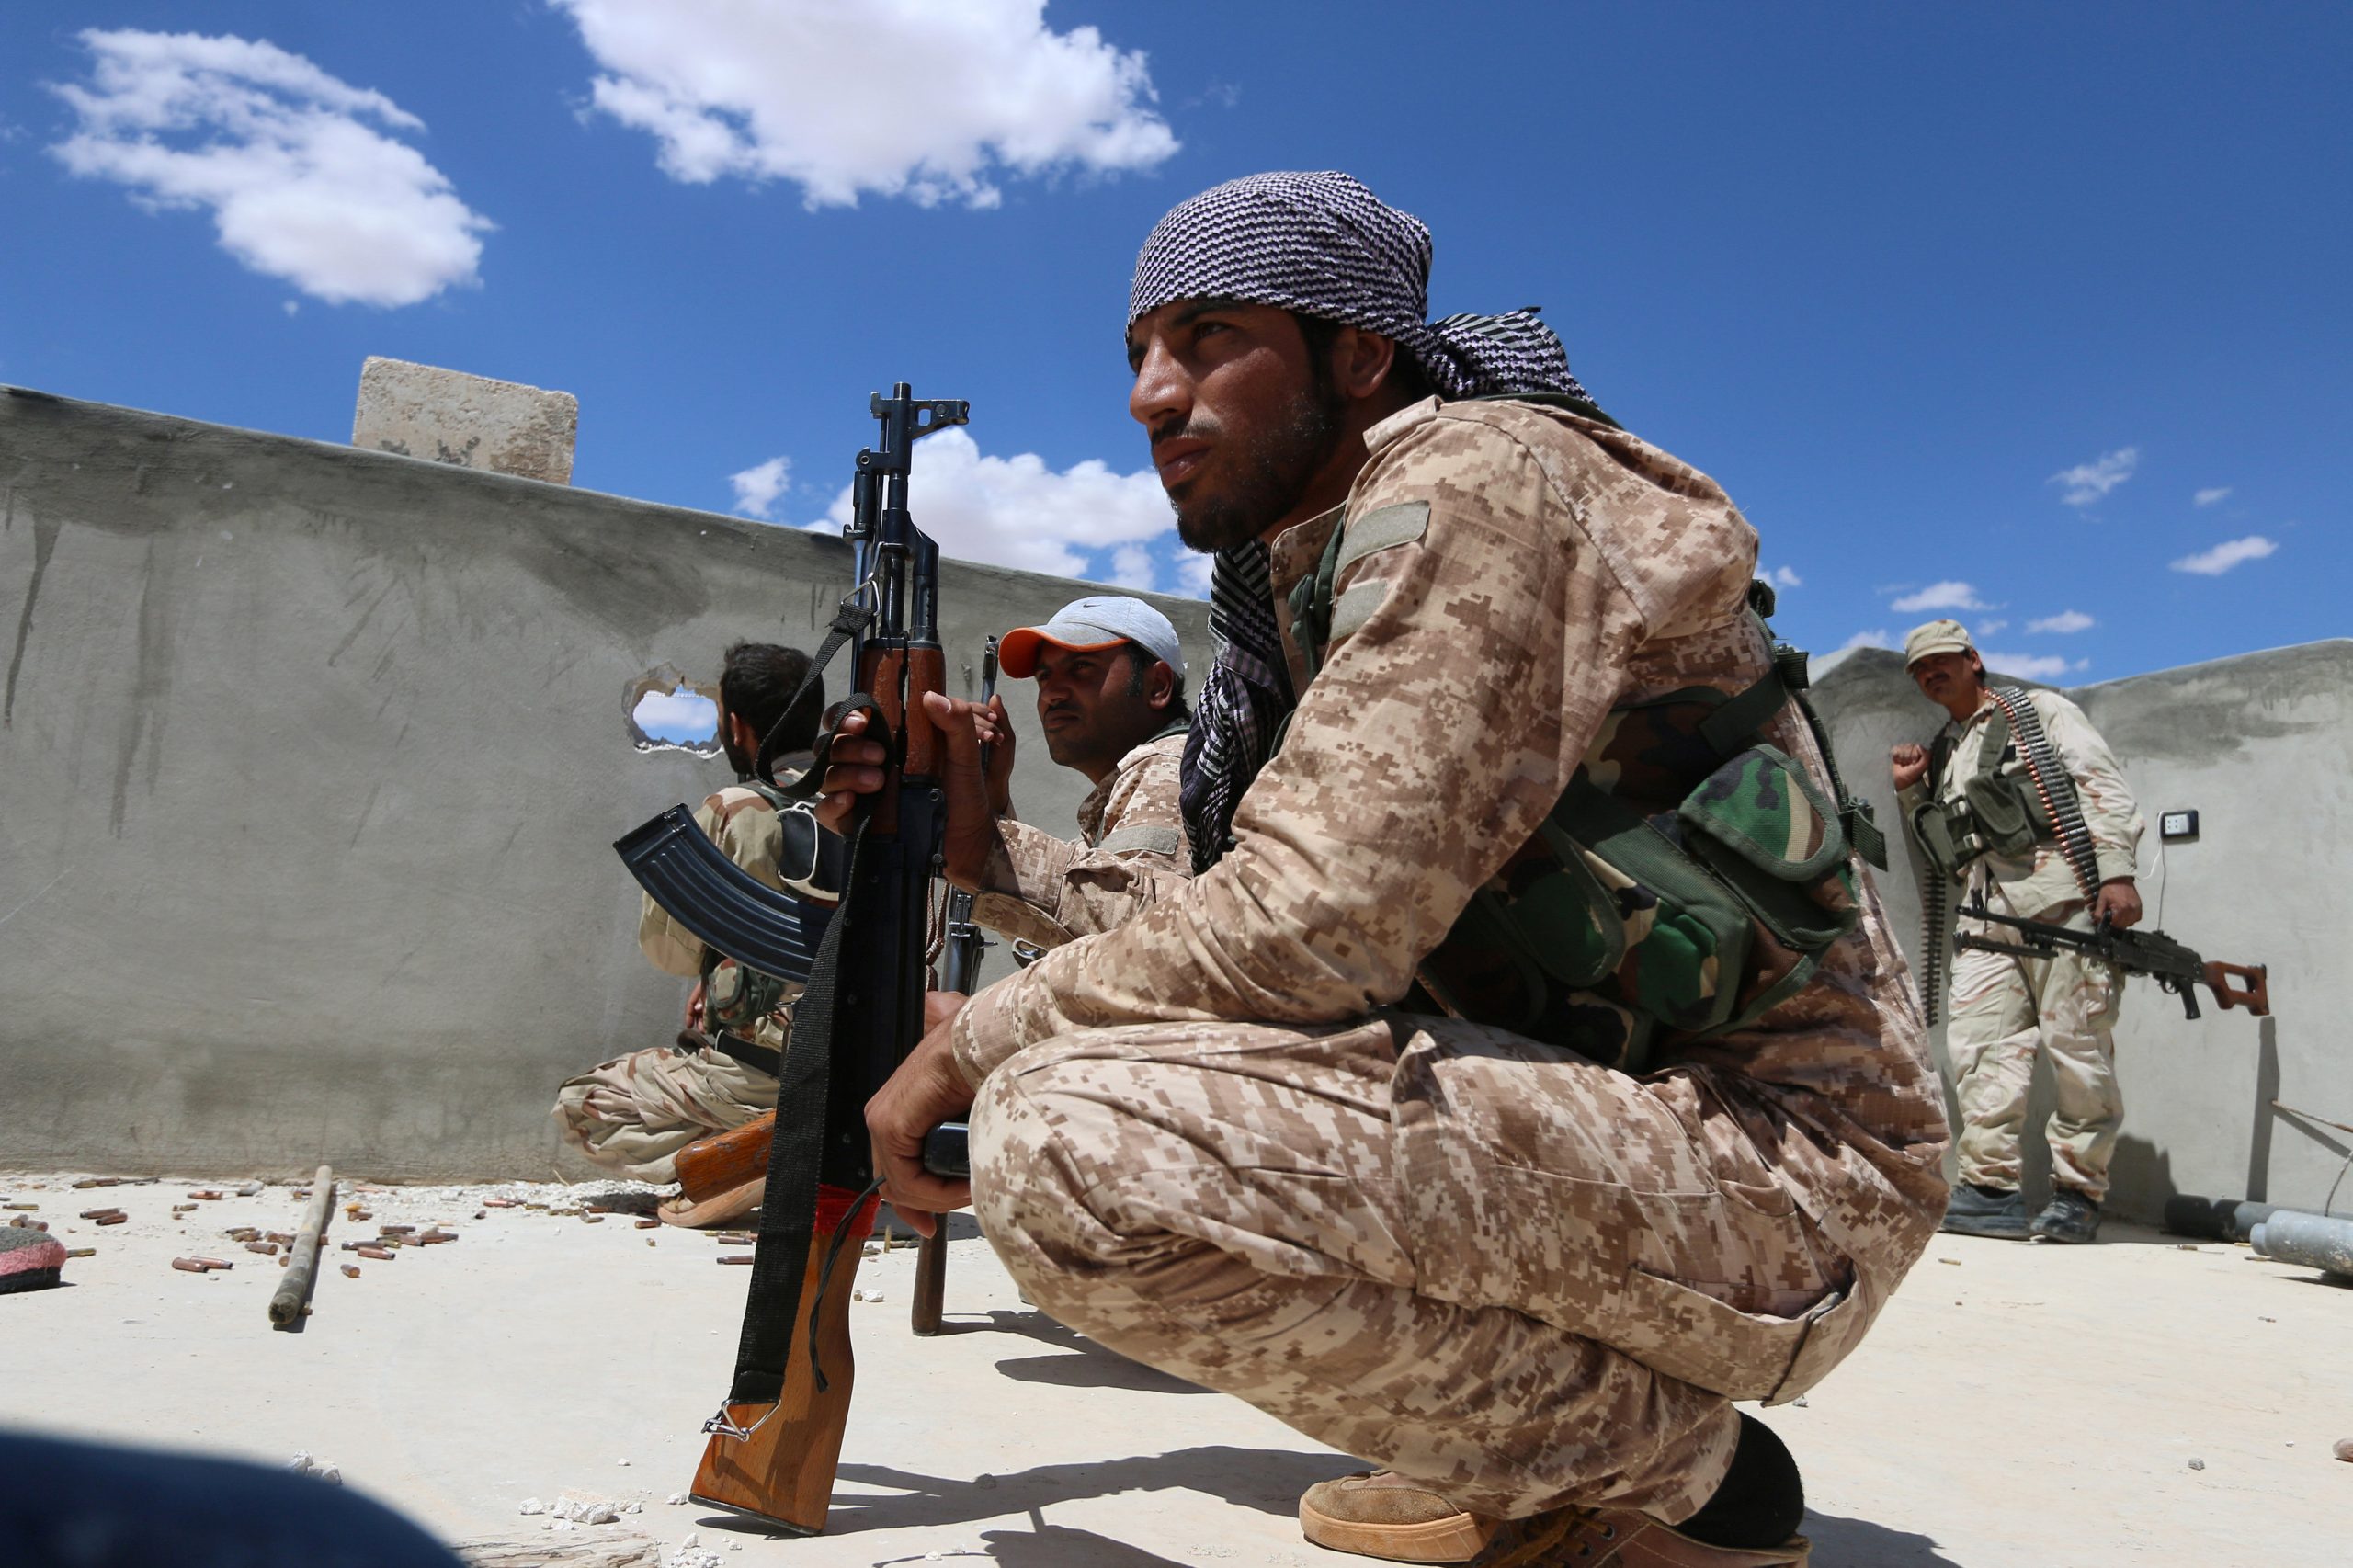 Επιβεβαίωση pronews.gr: Ο συριακός Στρατός μπήκε στην Μάνμπιτζ και ανέλαβε τον έλεγχο της πόλης μαζί με τους Κούρδους